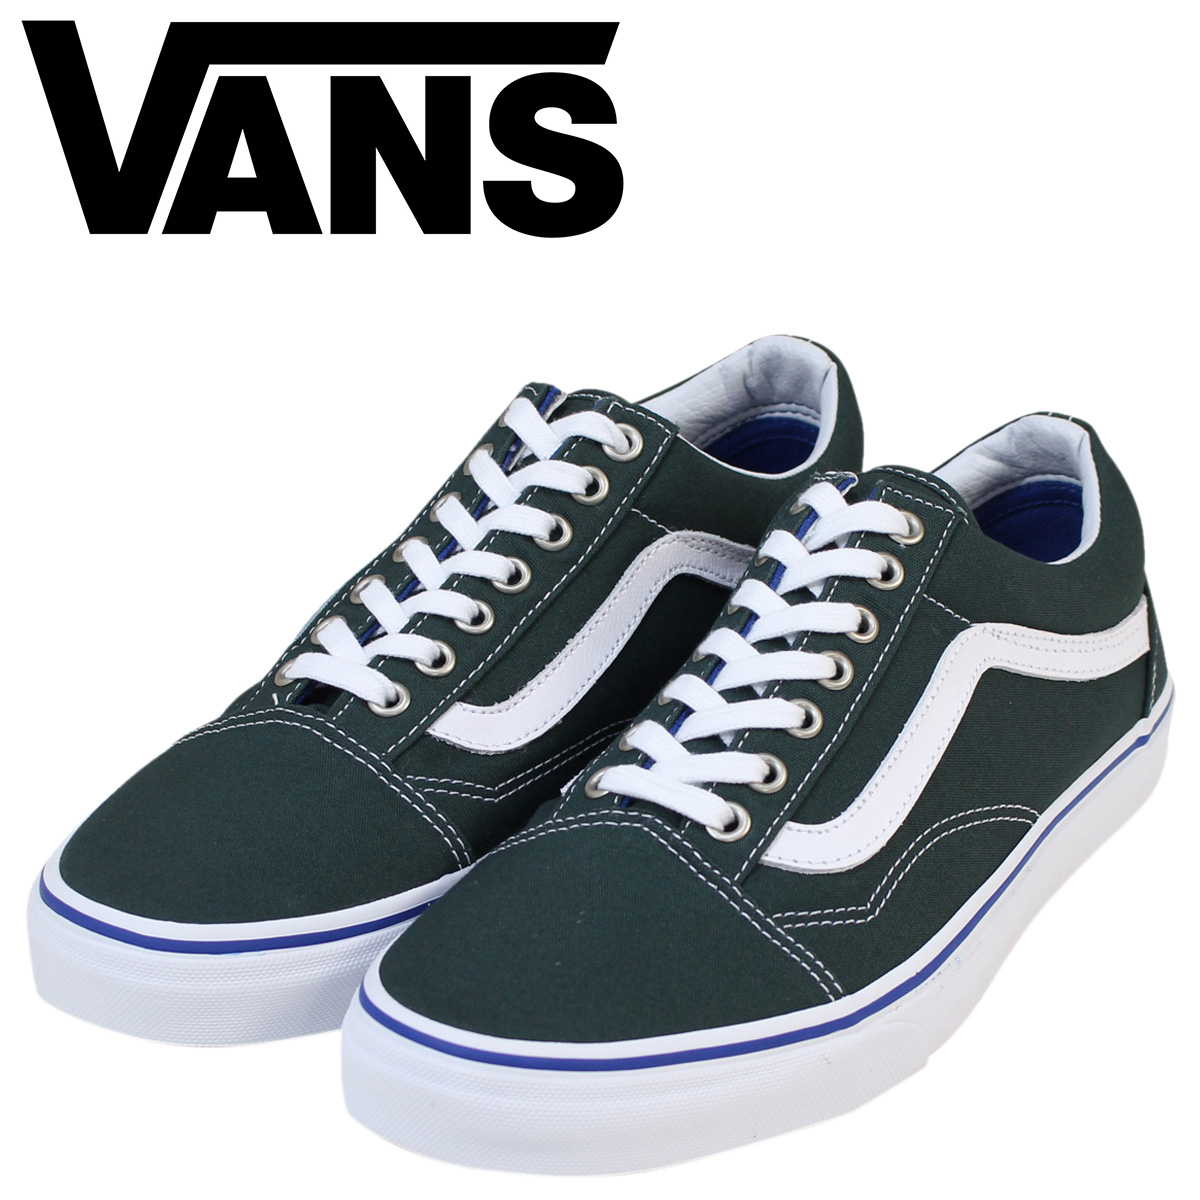 vans shoes online shop